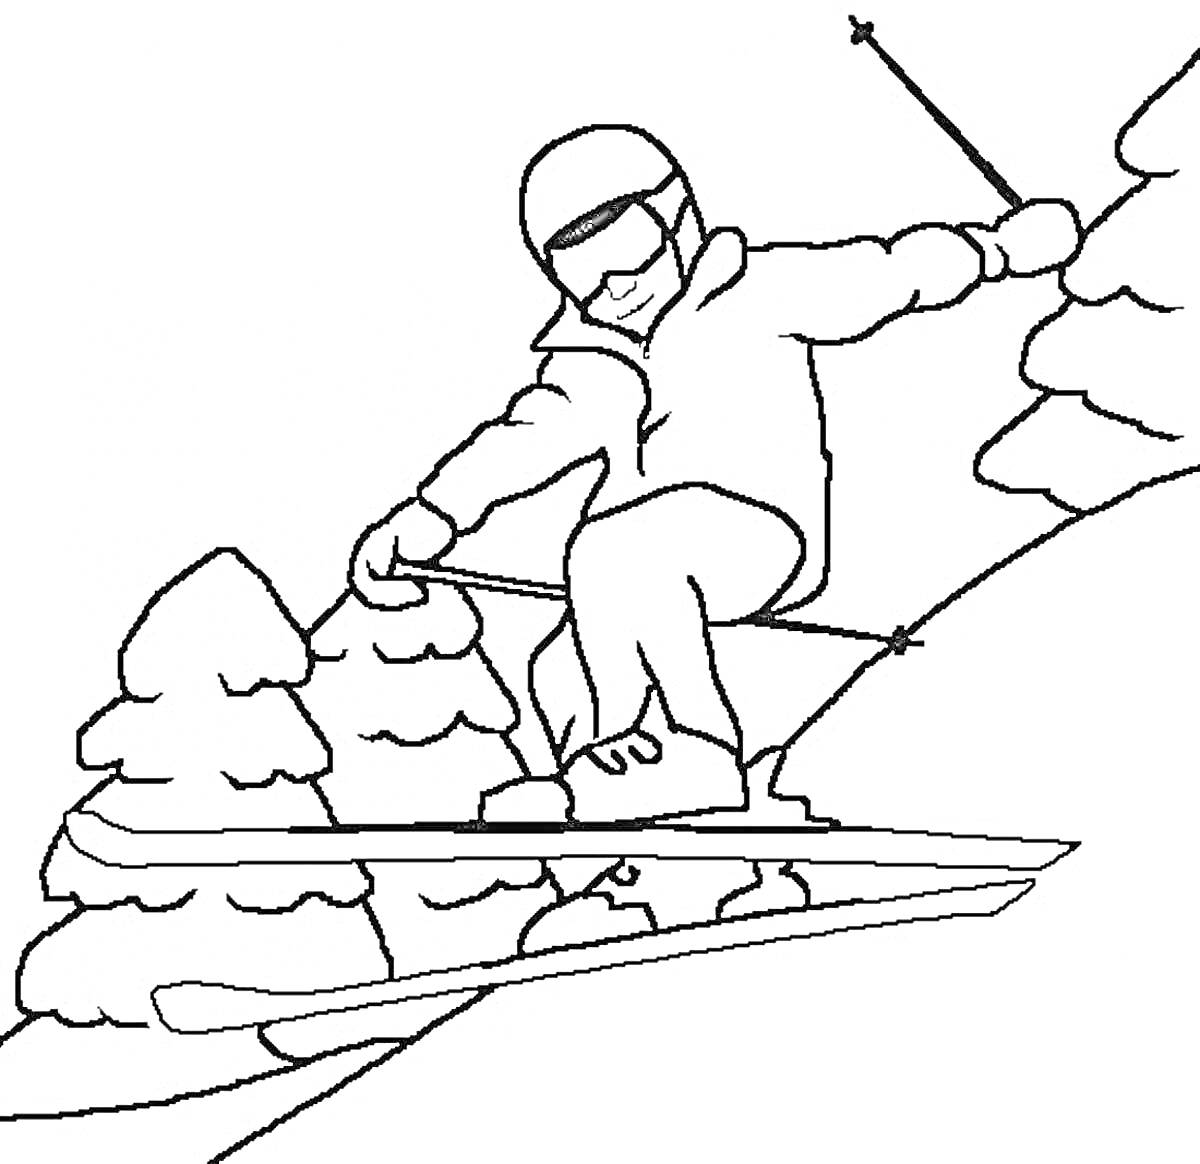 Раскраска Лыжник, спускающийся с горы со снегом и деревьями, в шлеме и очках